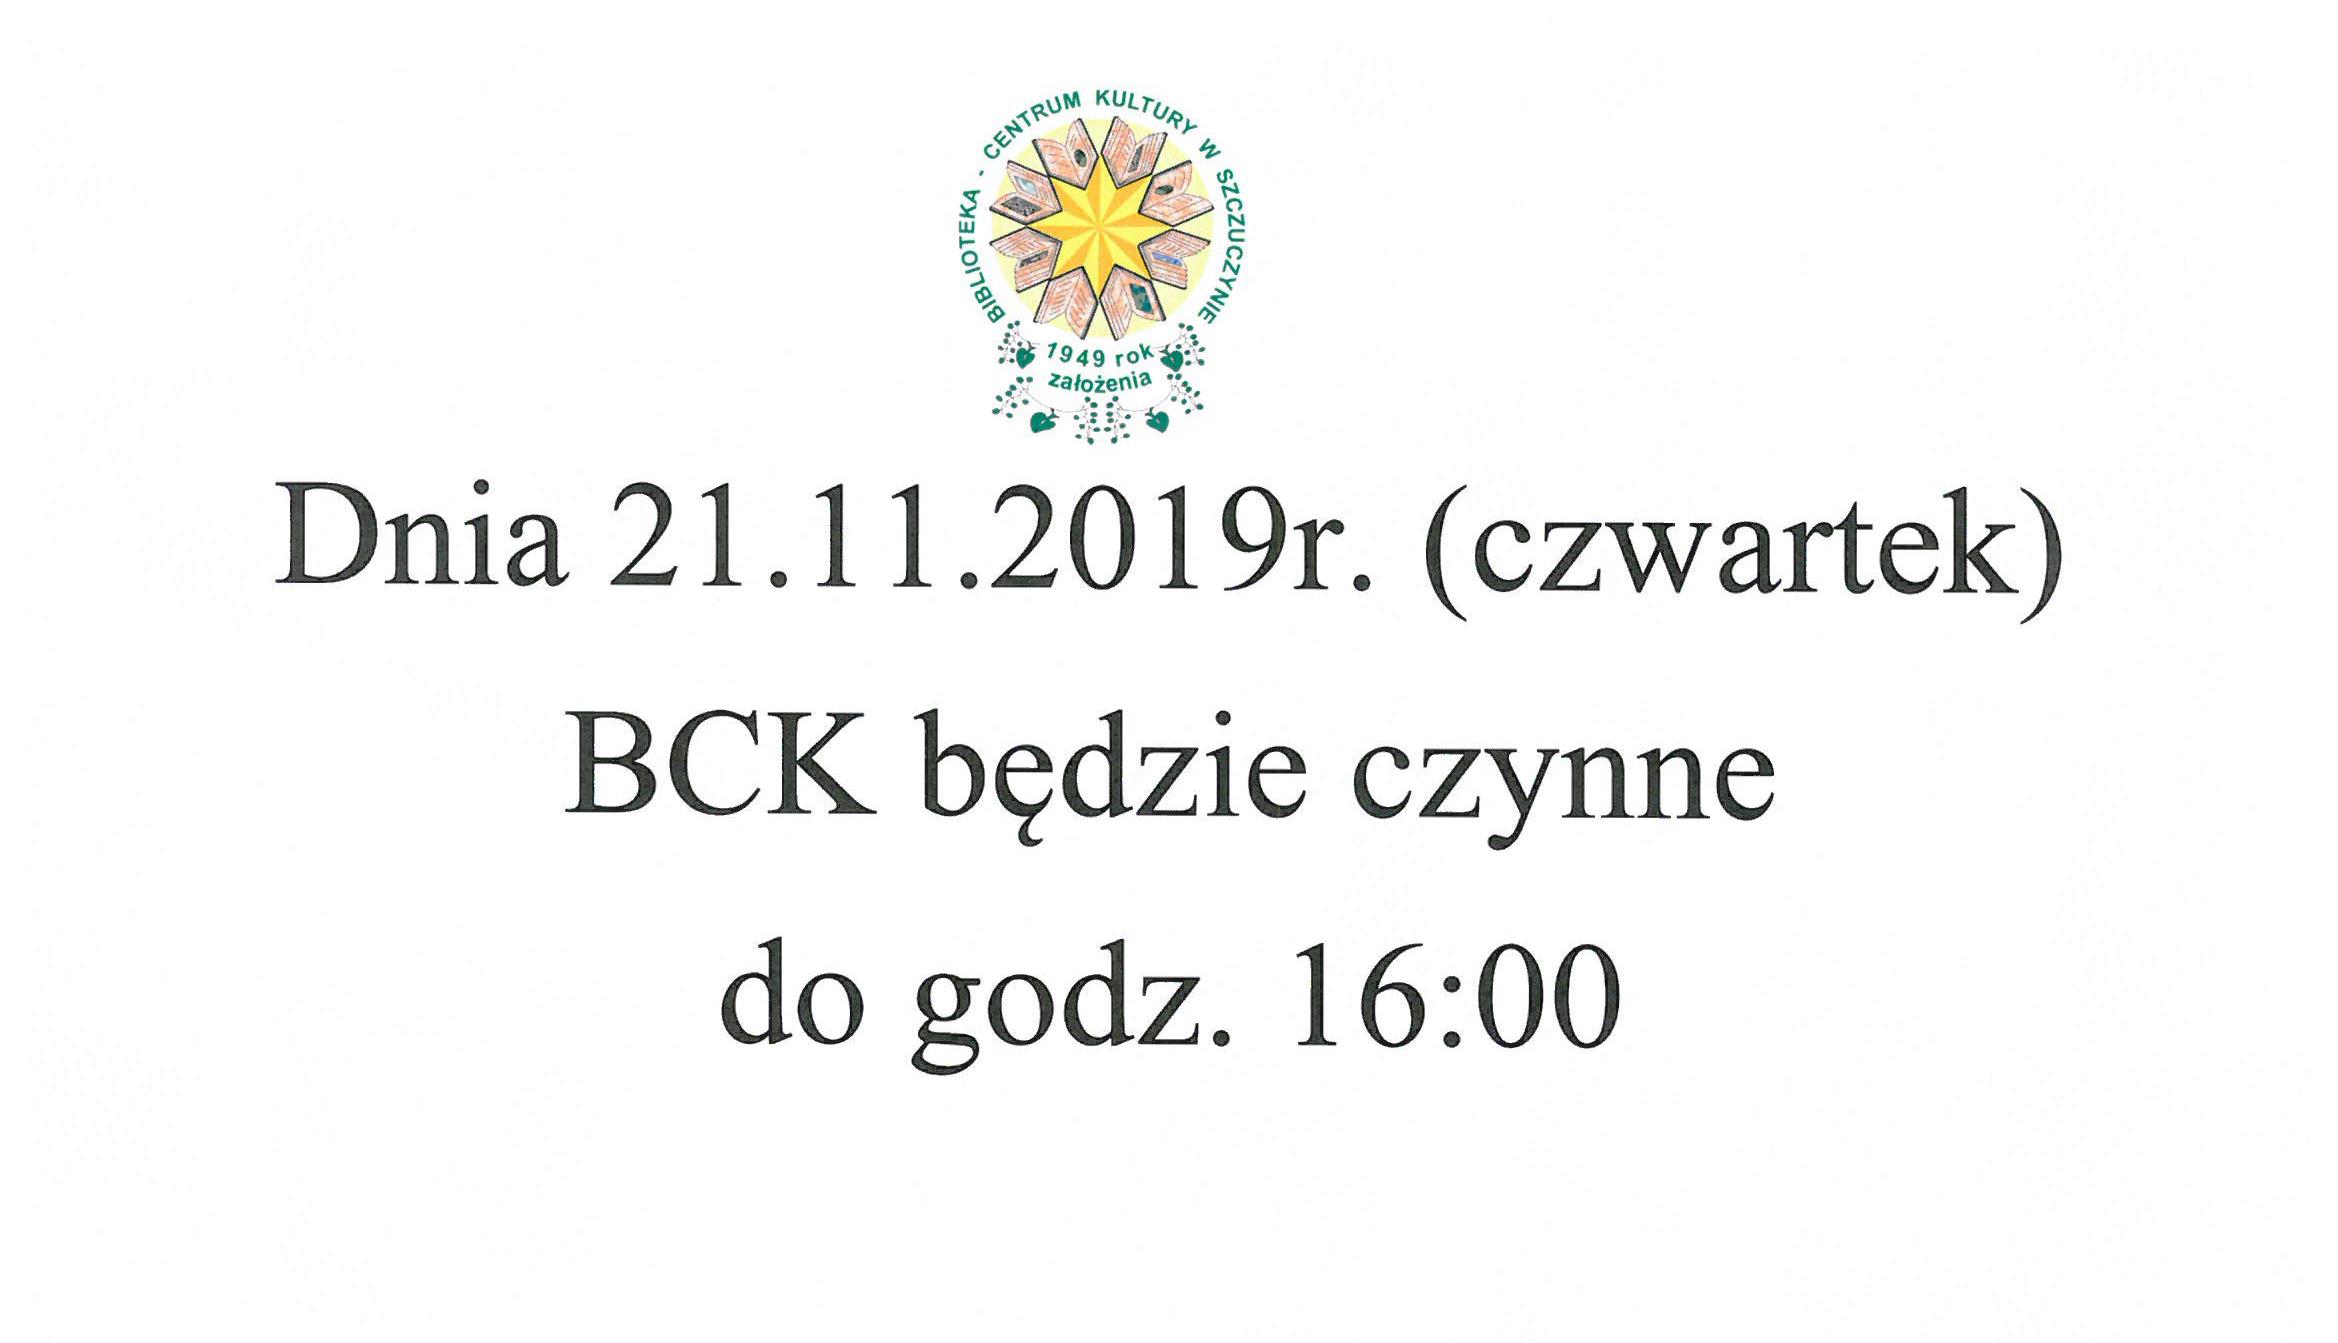 Dnia 21.11.2019r. (czwartek) BCK będzie czynne do godz. 16:00